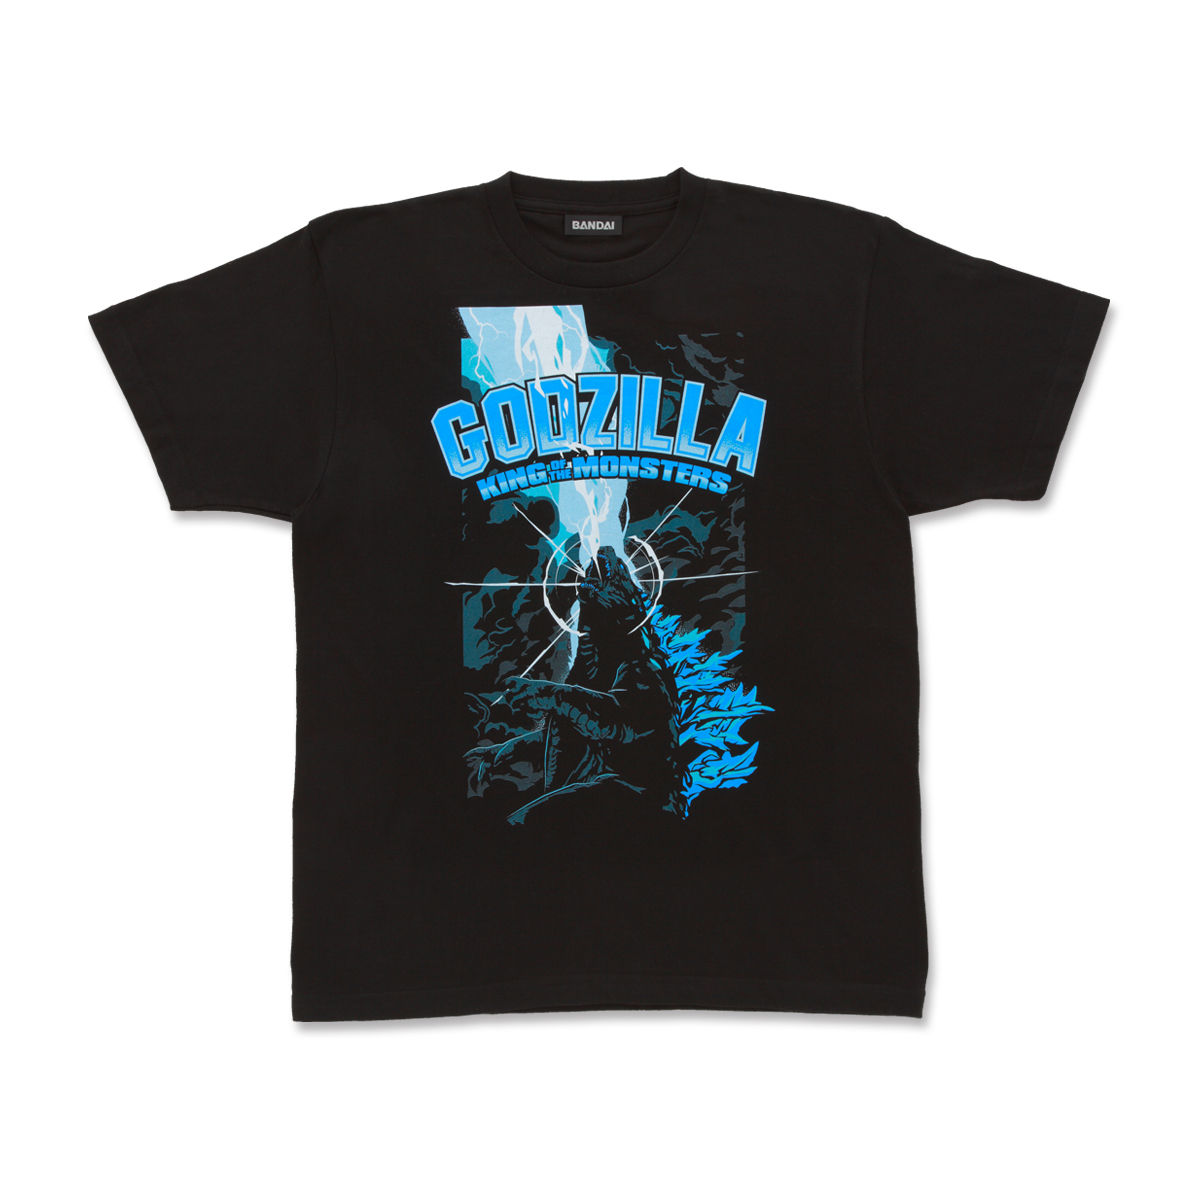 Godzilla: King of the Monsters - Godzilla T-shirt